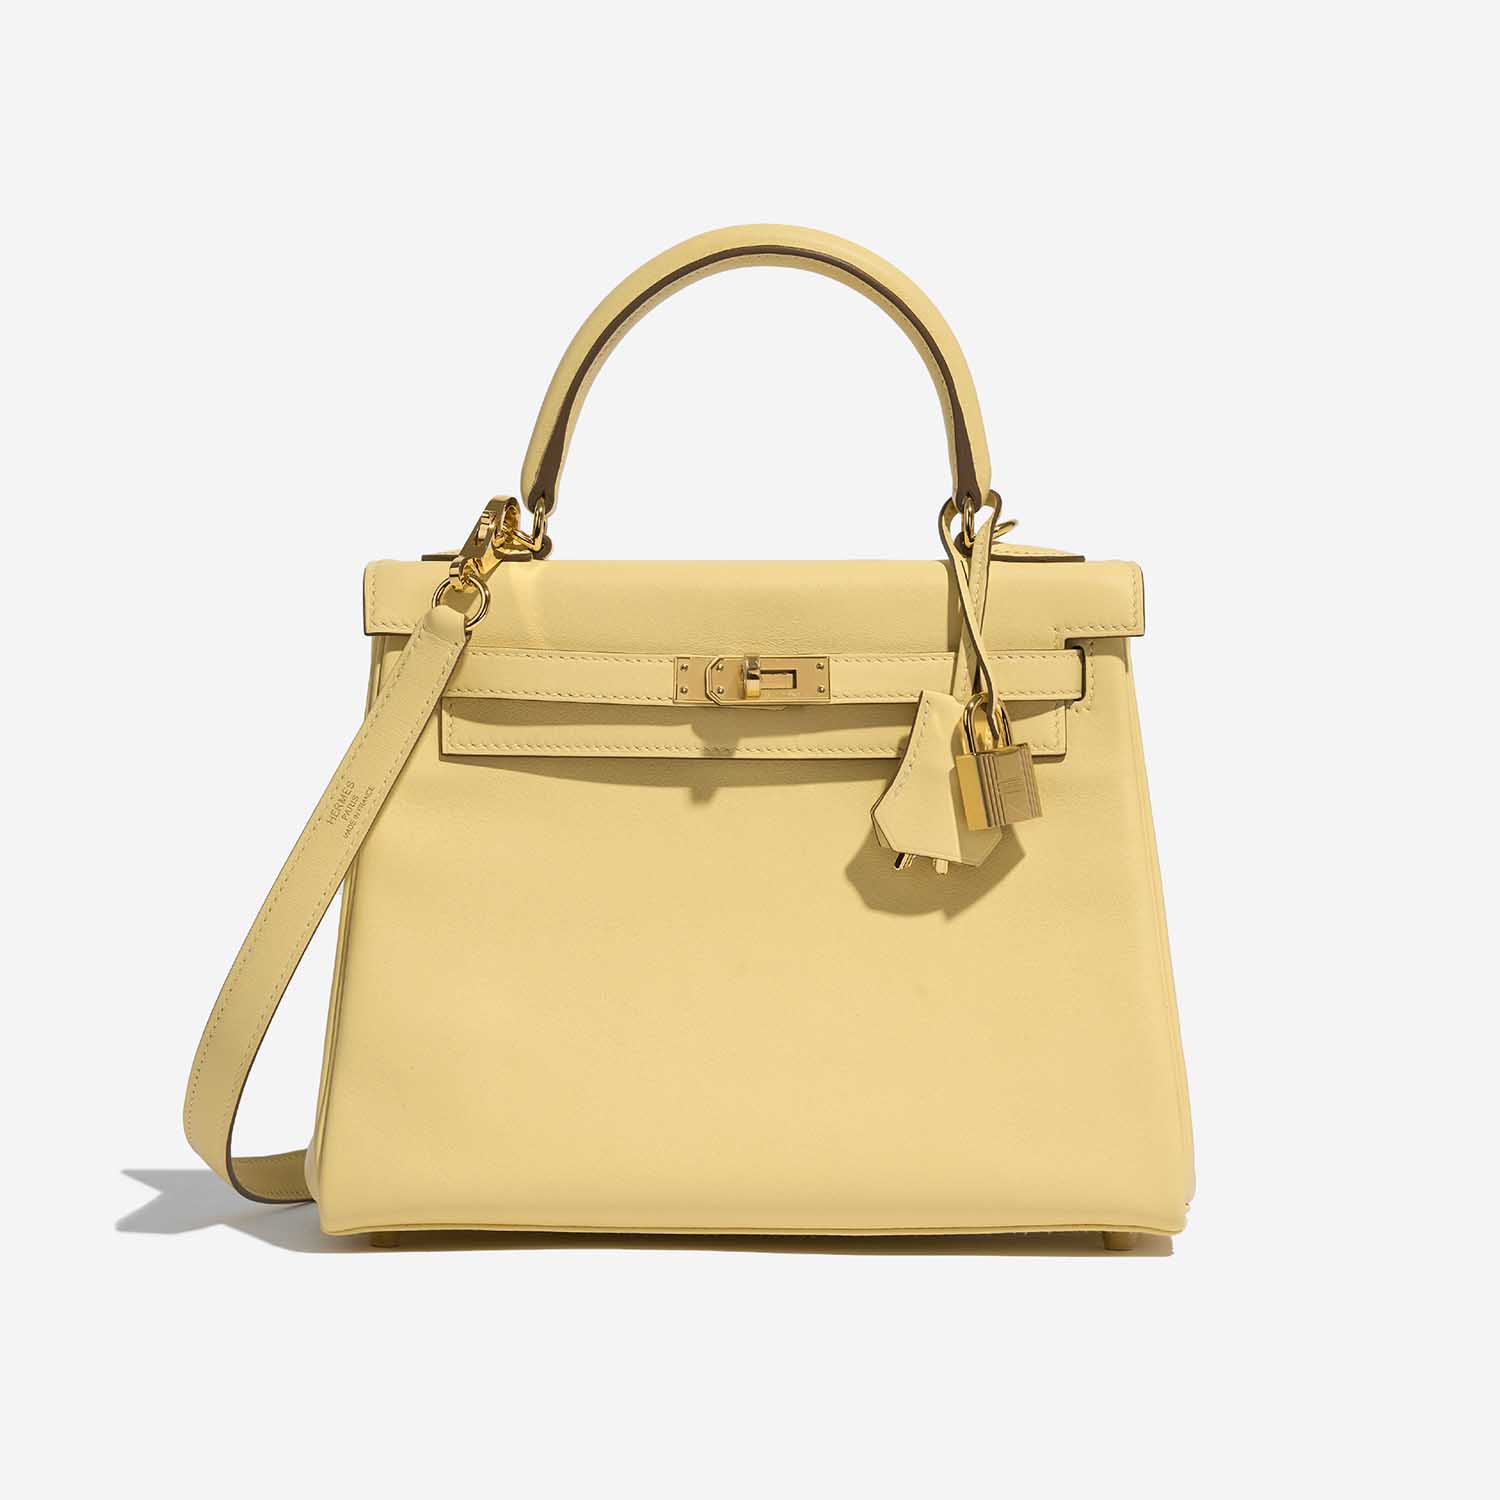 Pre-owned Hermès Tasche Kelly 25 Swift Jaune Poussin Yellow Front | Verkaufen Sie Ihre Designer-Tasche auf Saclab.com